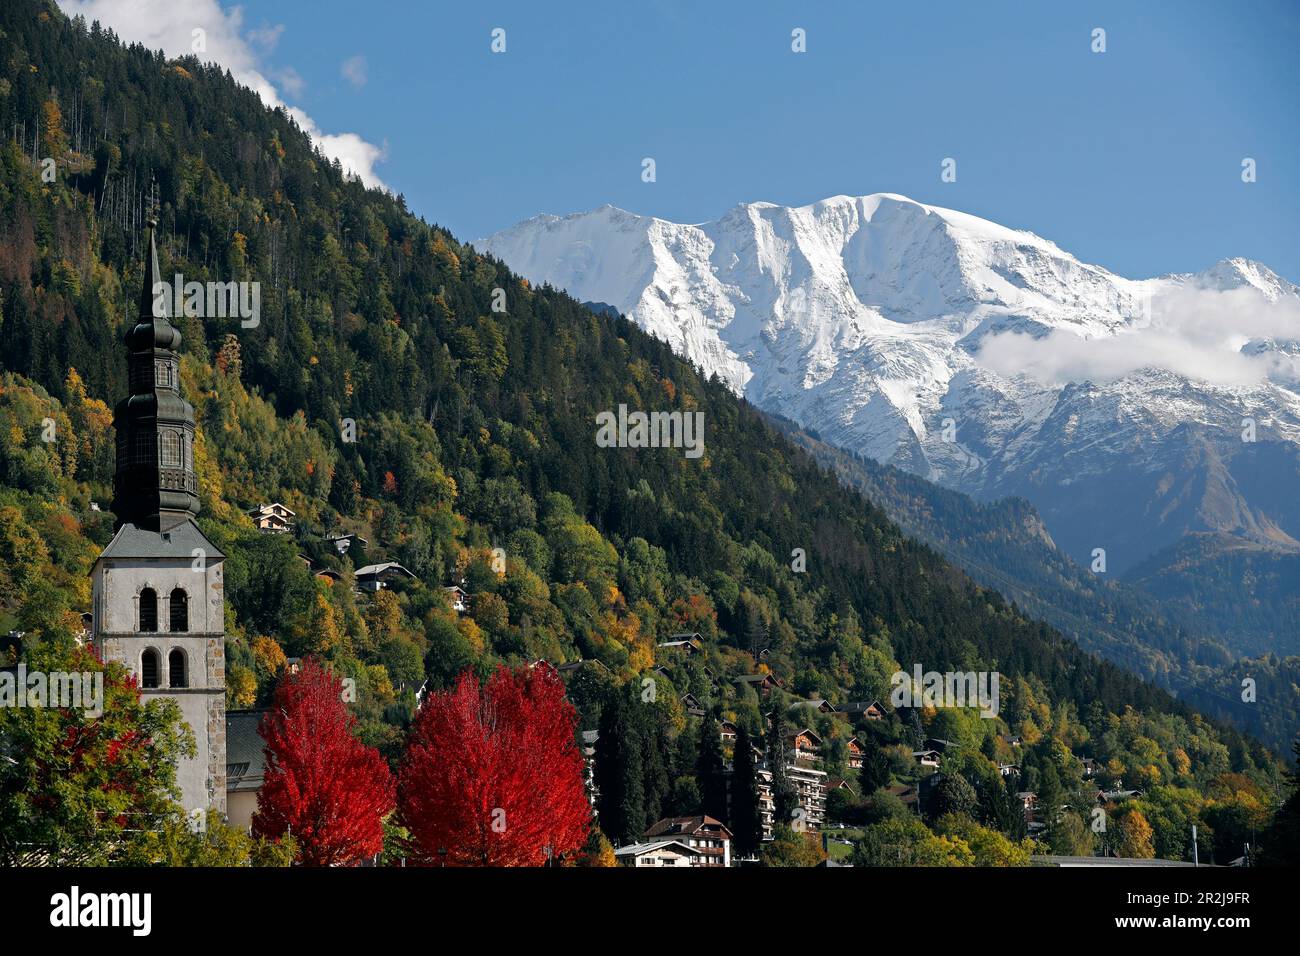 Alpes françaises en automne, église baroque, Saint-Gervais, haute Savoie, Auvergne-Rhône-Alpes, France, Europe Banque D'Images